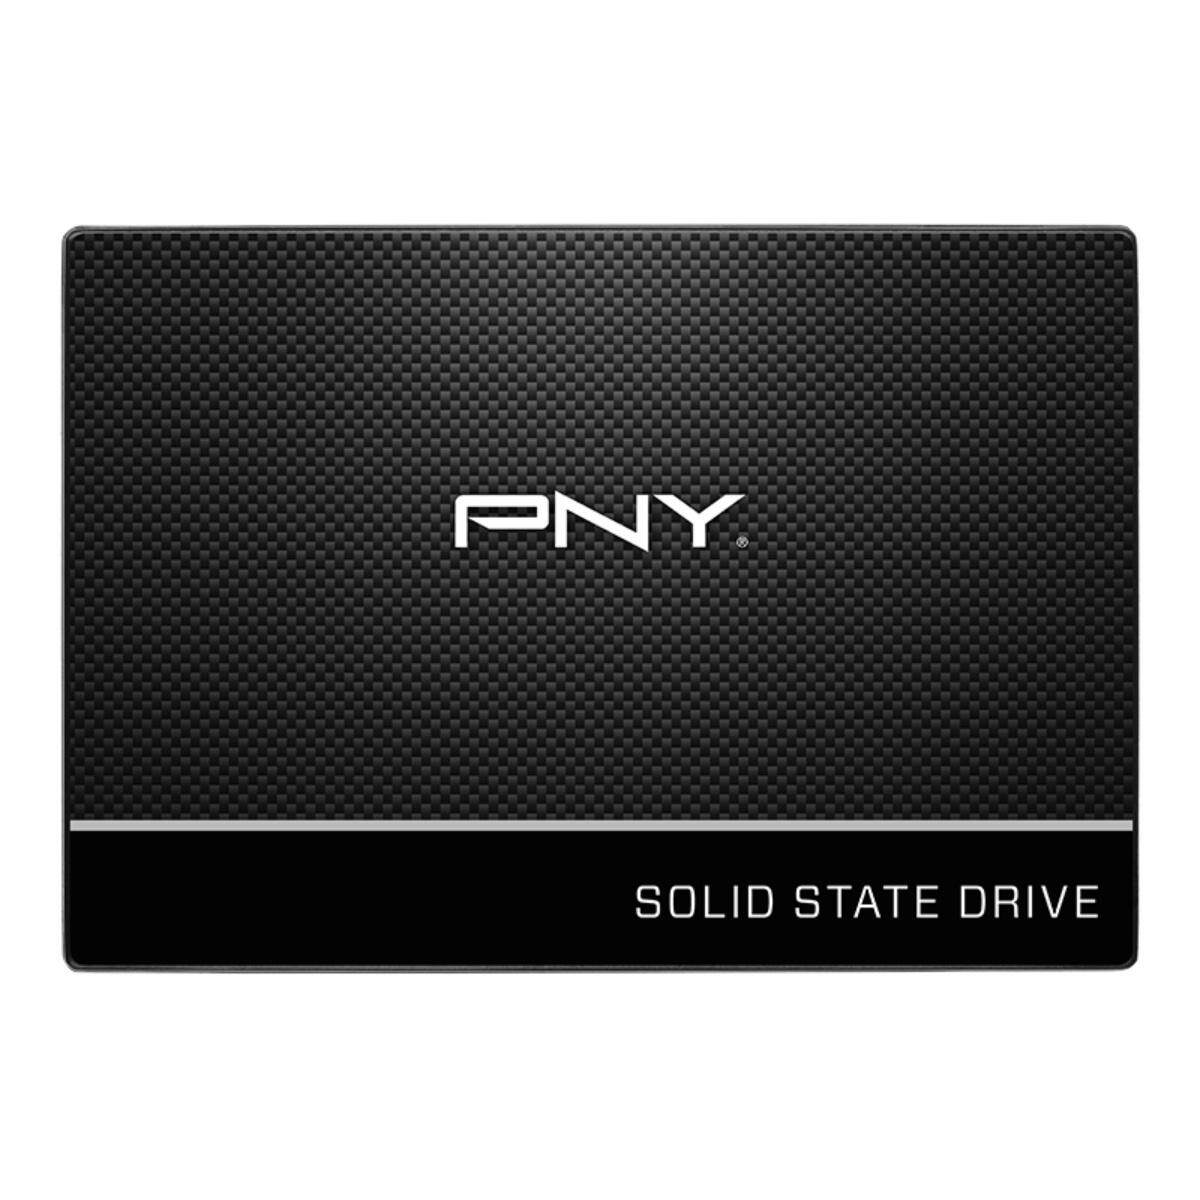 SSD PNY CS900 2.5" SATA 3 3D NAND SSD Solid State Drives 500GB (SSD7CS900-500-RB)